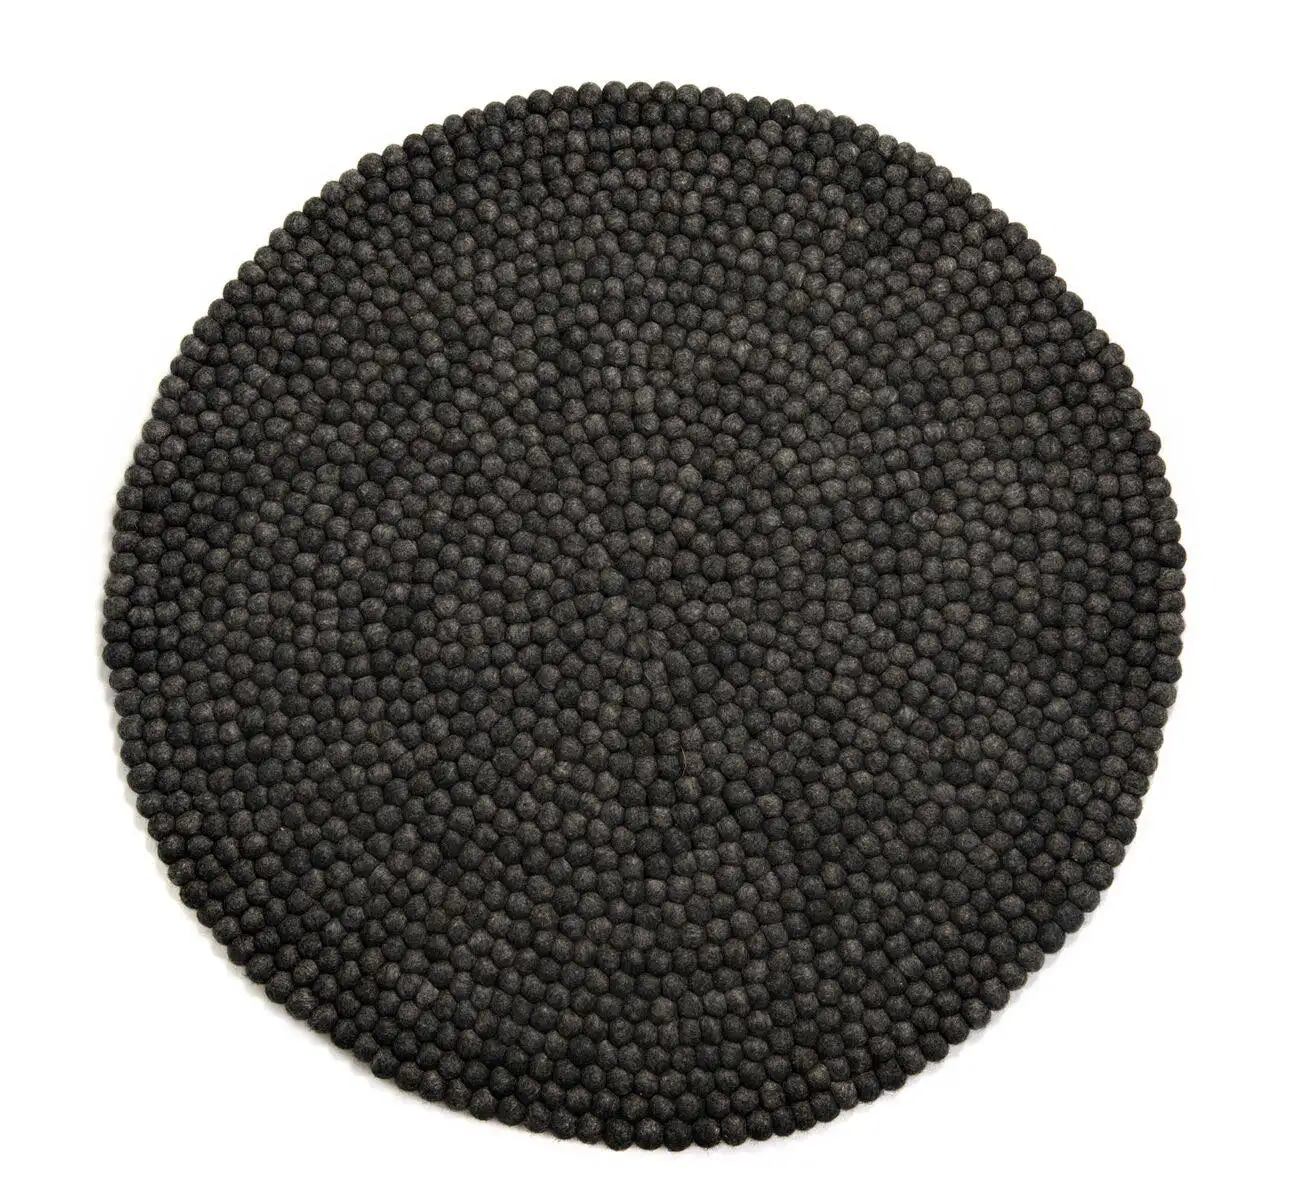 Tappeto a sfera in feltro di lana cucito a mano grigio scuro usa siting e decorazione in soggiorno e camera da letto